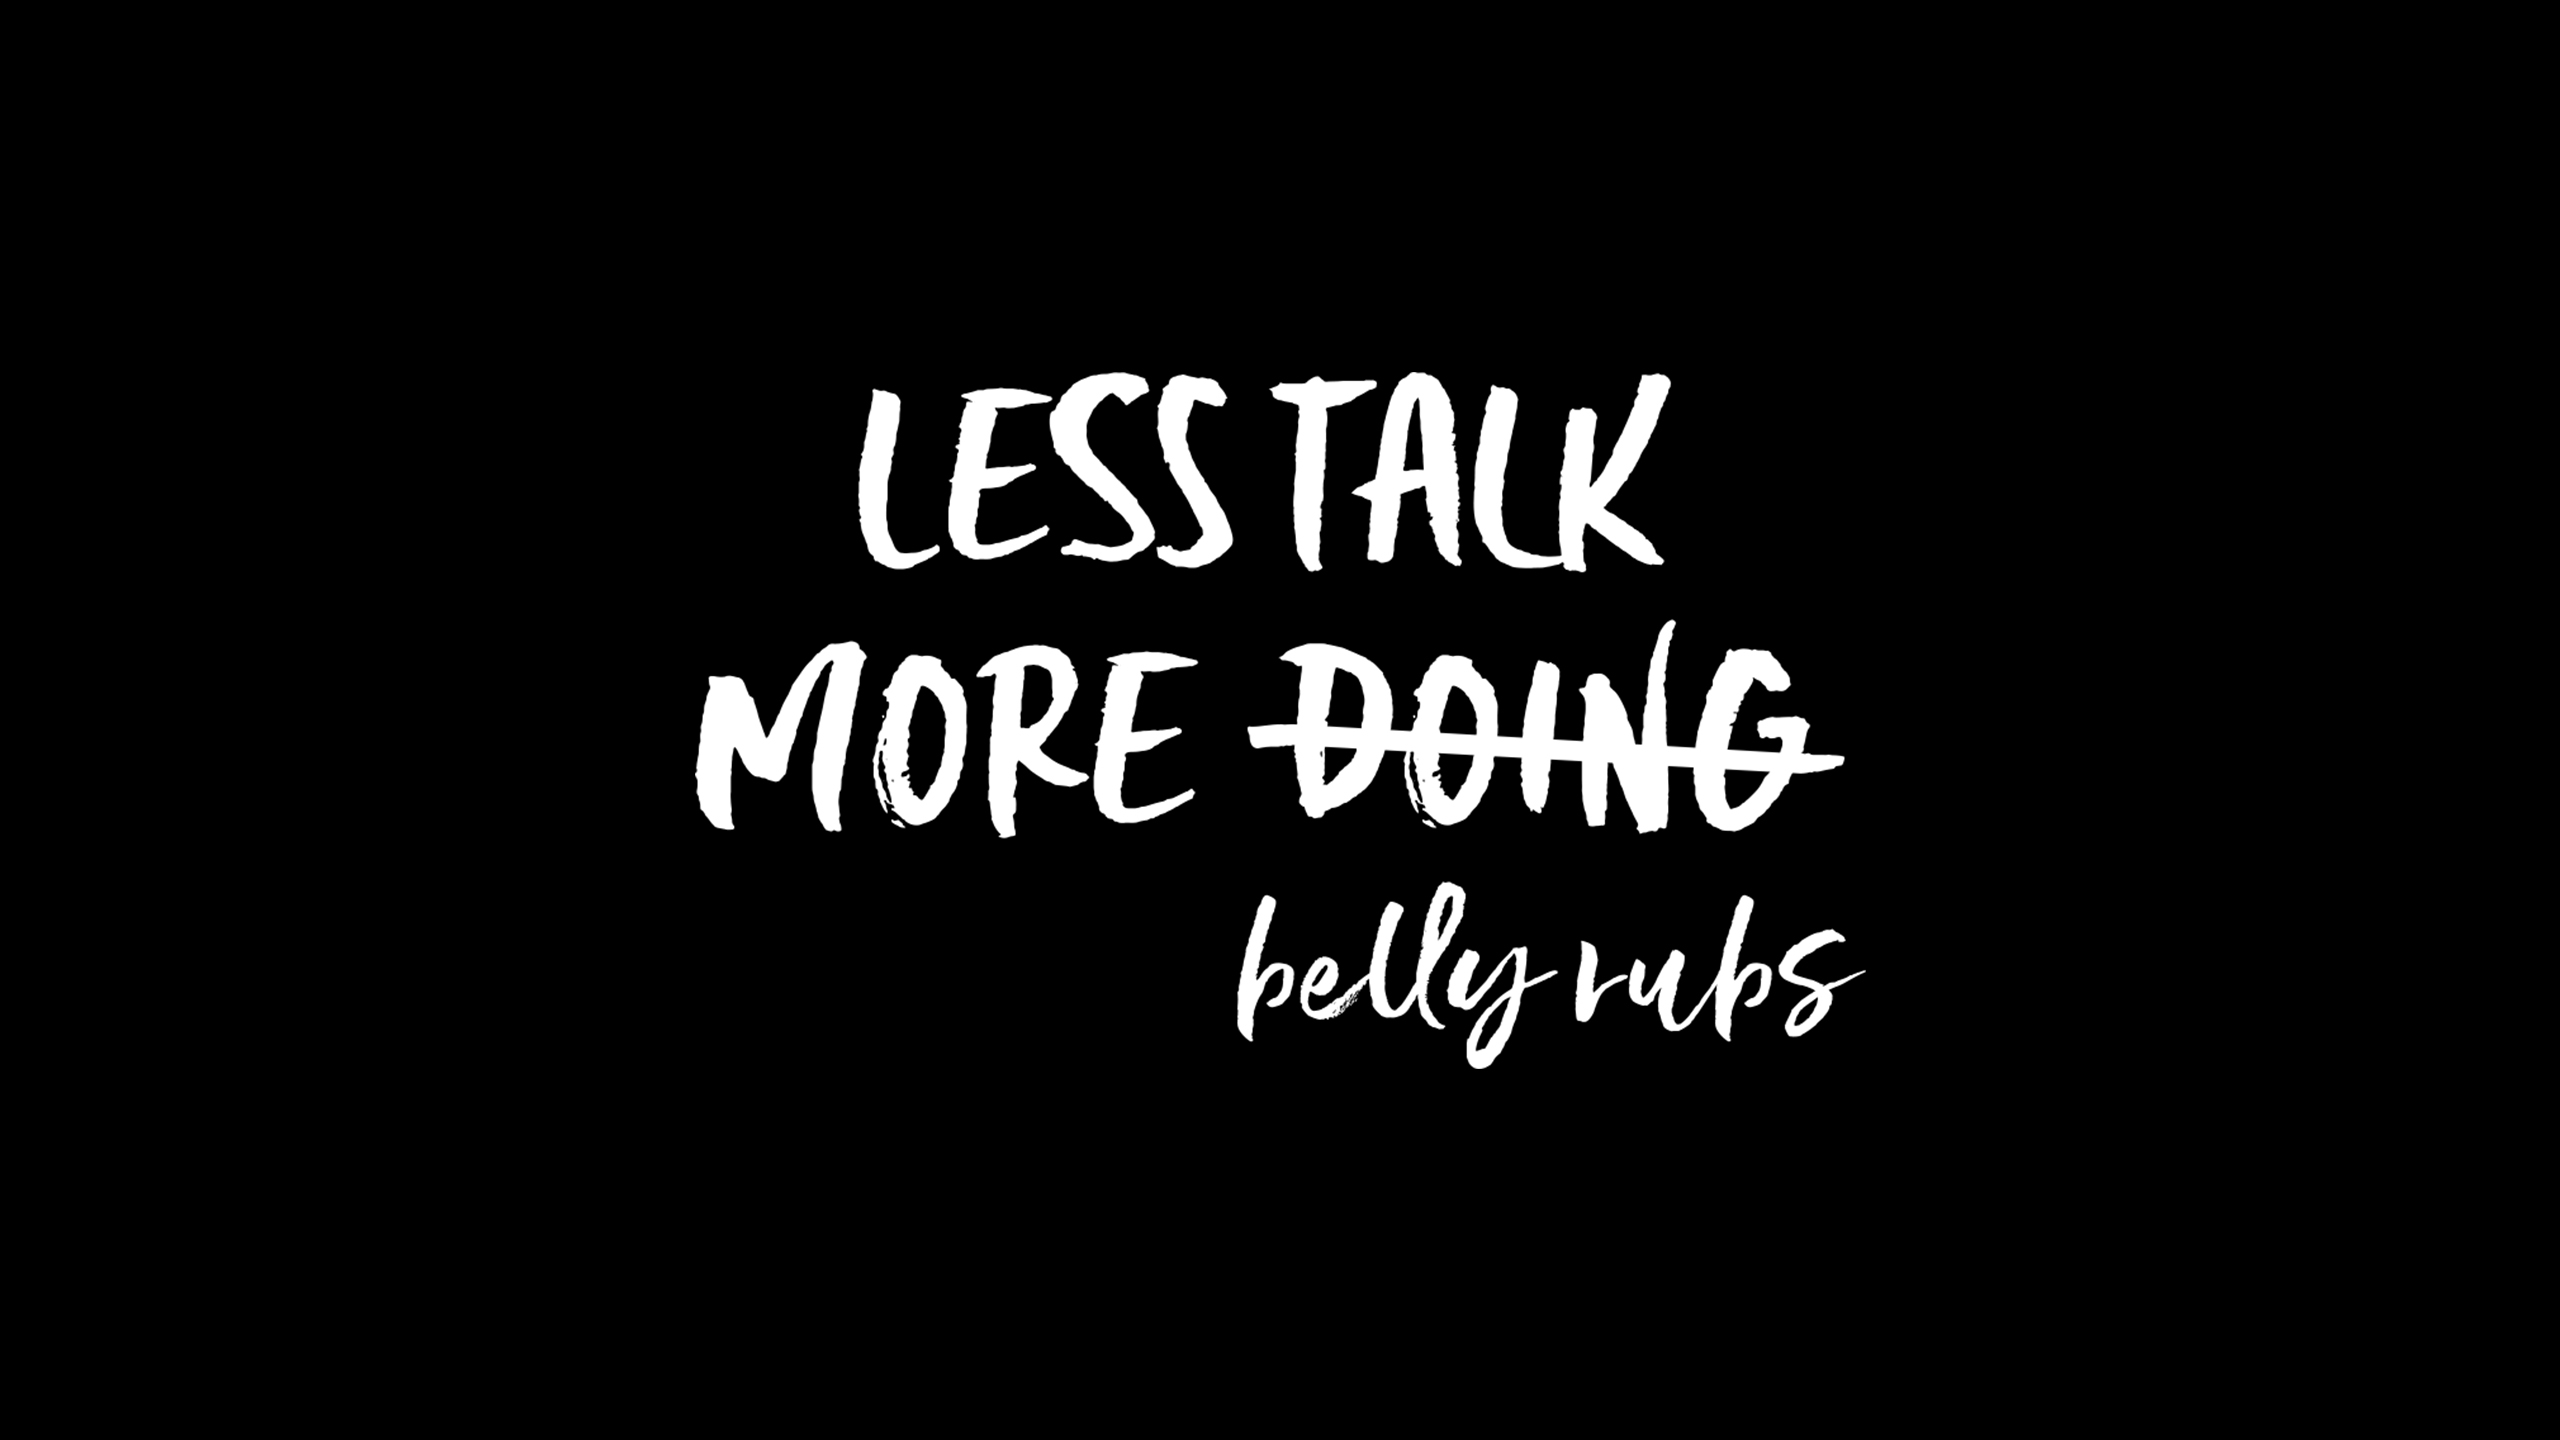 Less talk more